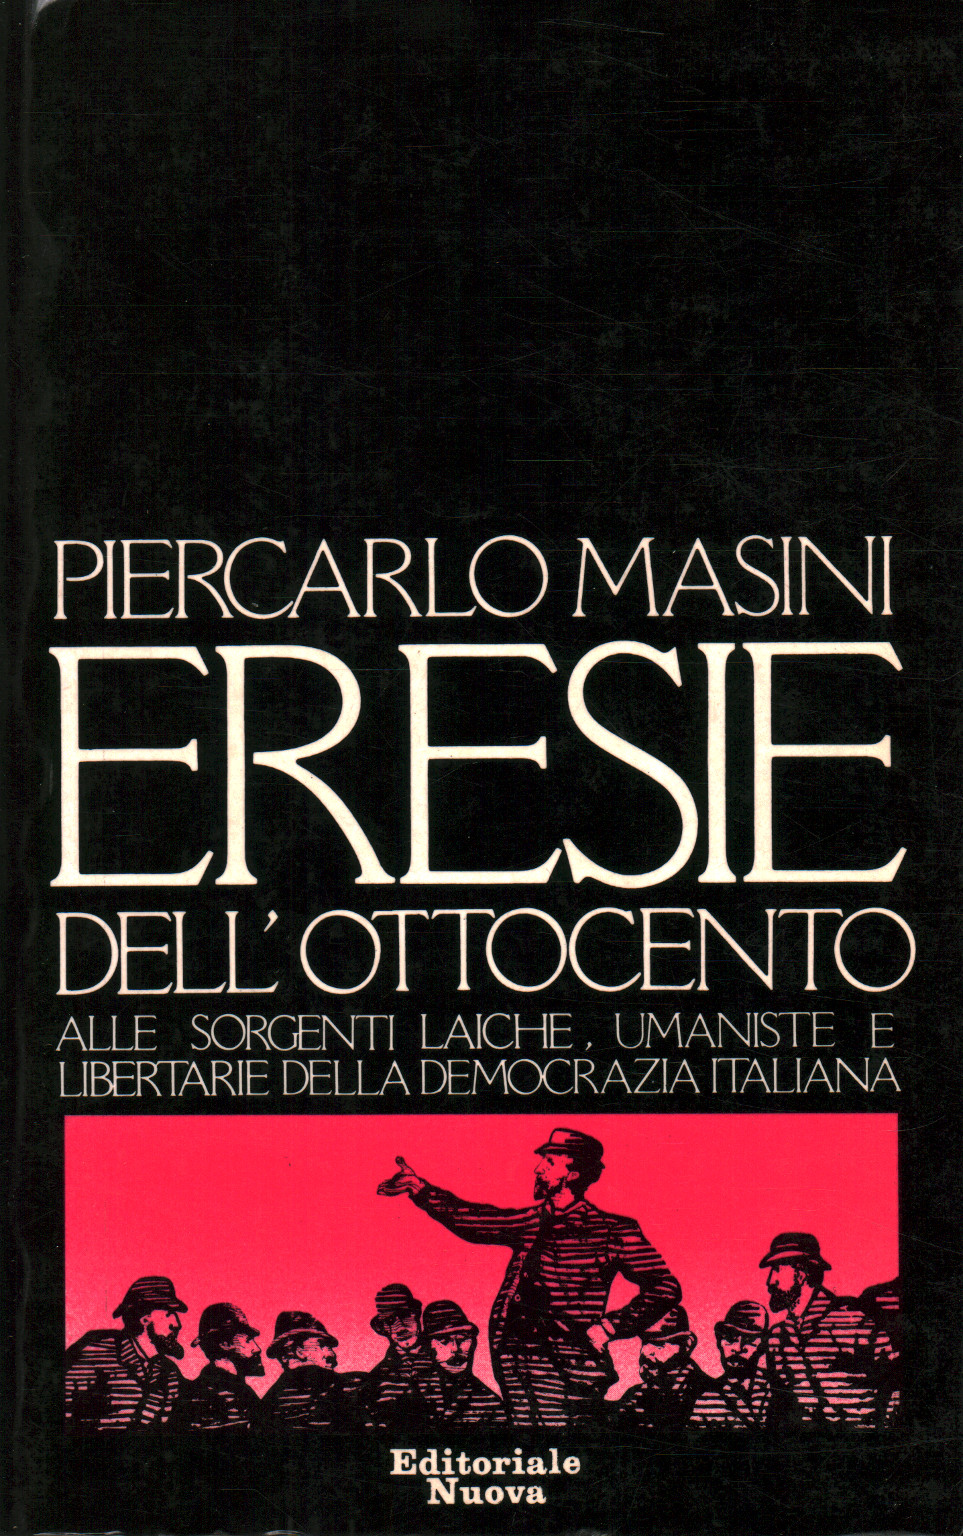 Eresie dell'Ottocento, Pier Carlo Masini